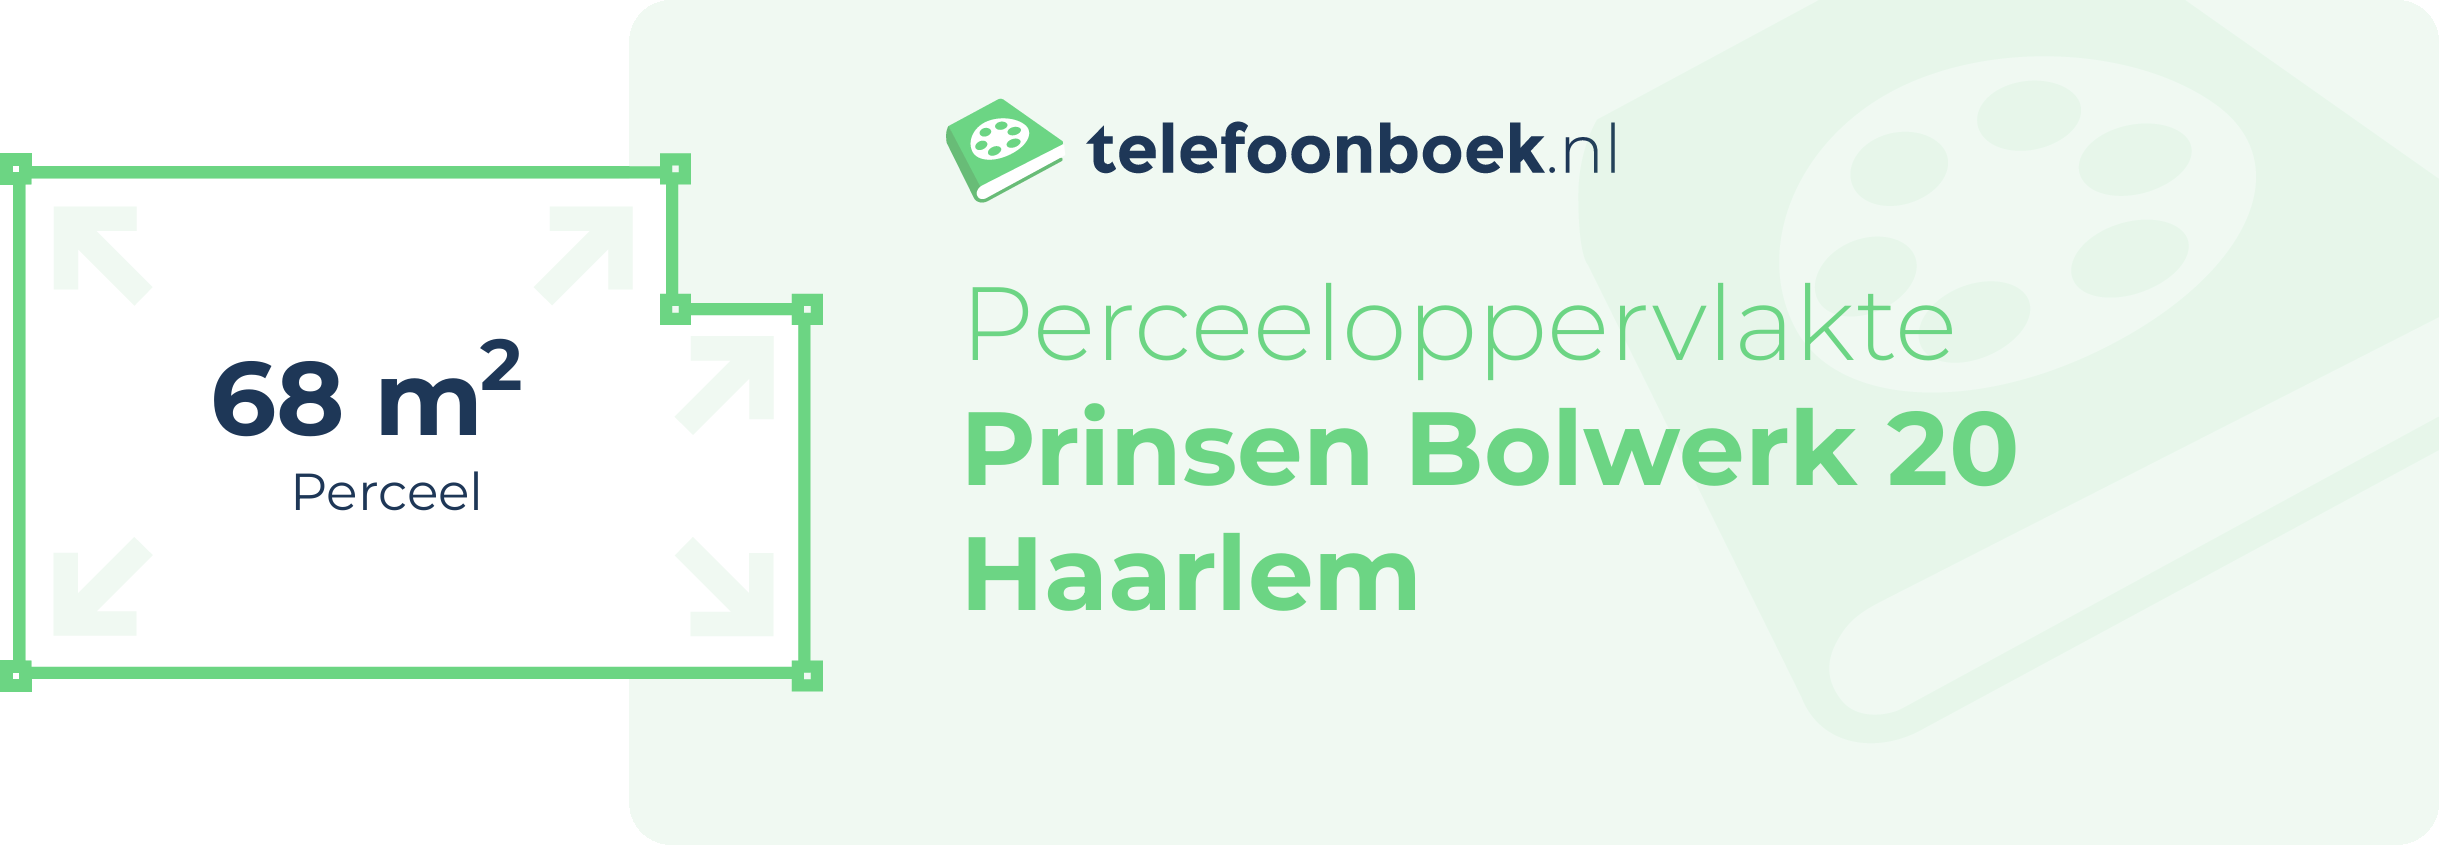 Perceeloppervlakte Prinsen Bolwerk 20 Haarlem